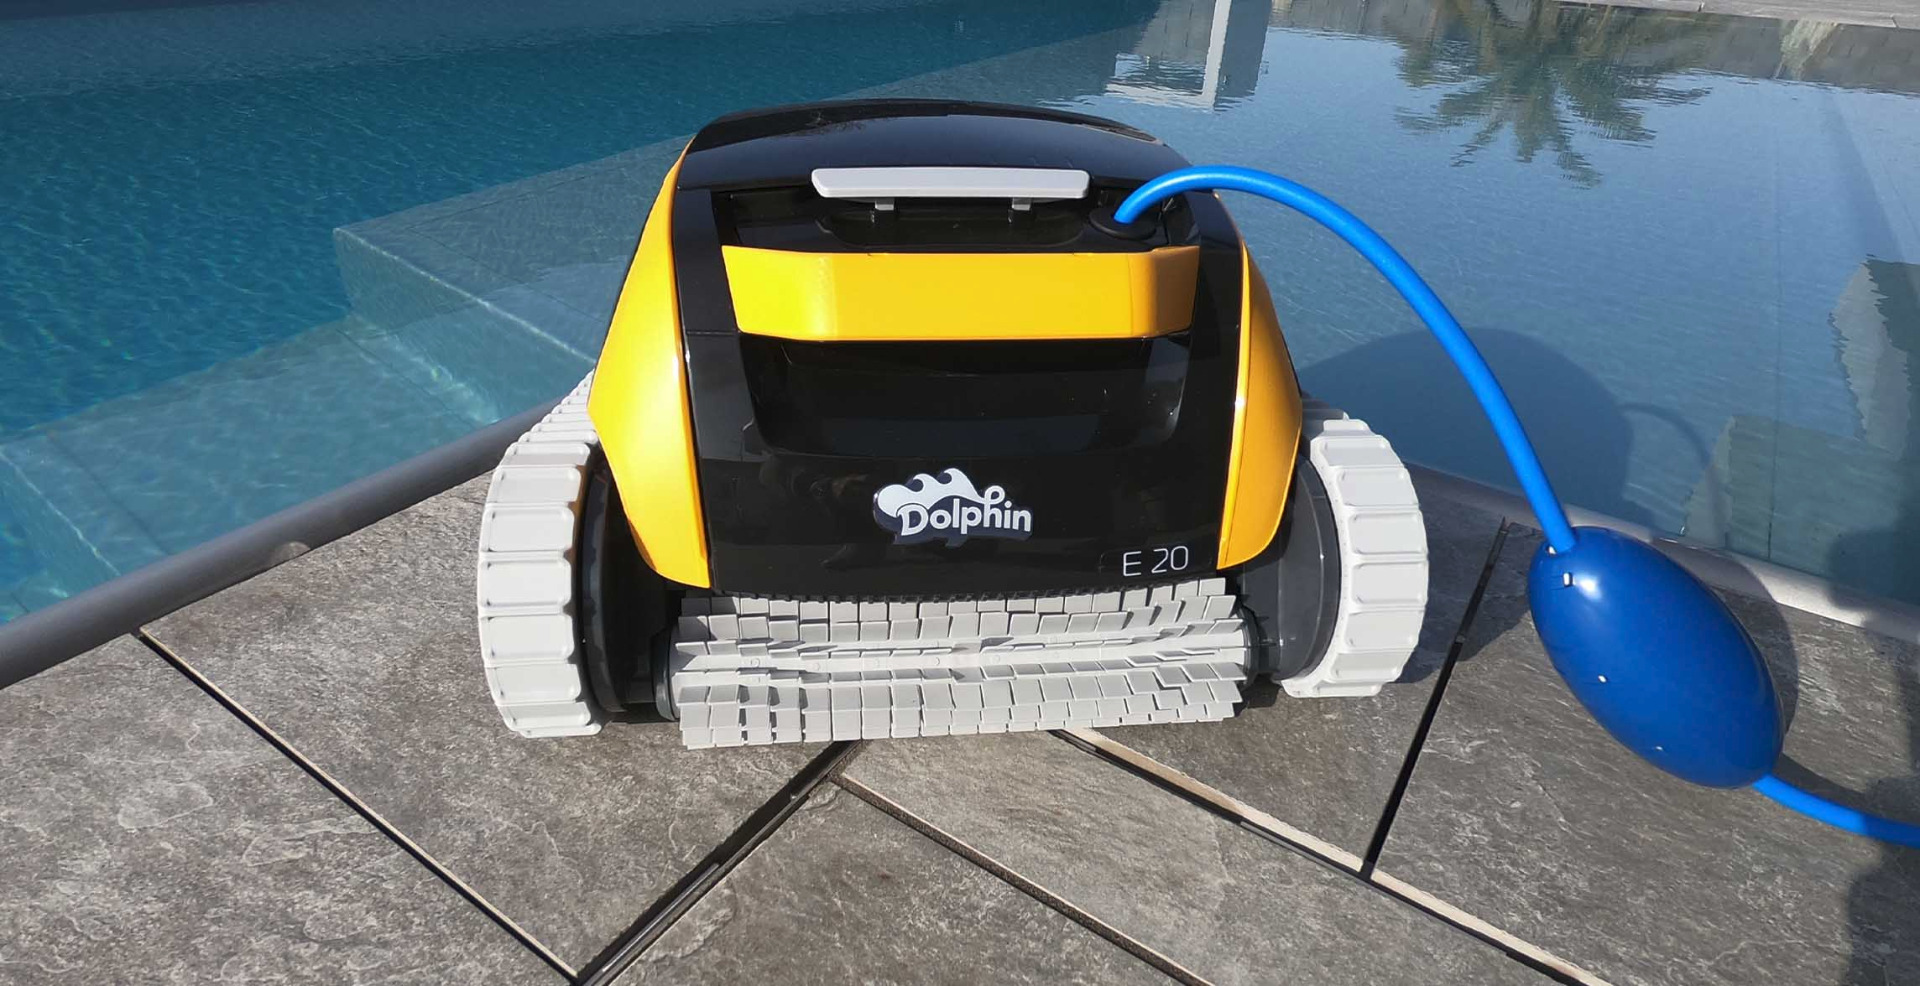 Robot Dolphin E20. Pulitore Maytronics per piscine di piccole dimensioni.